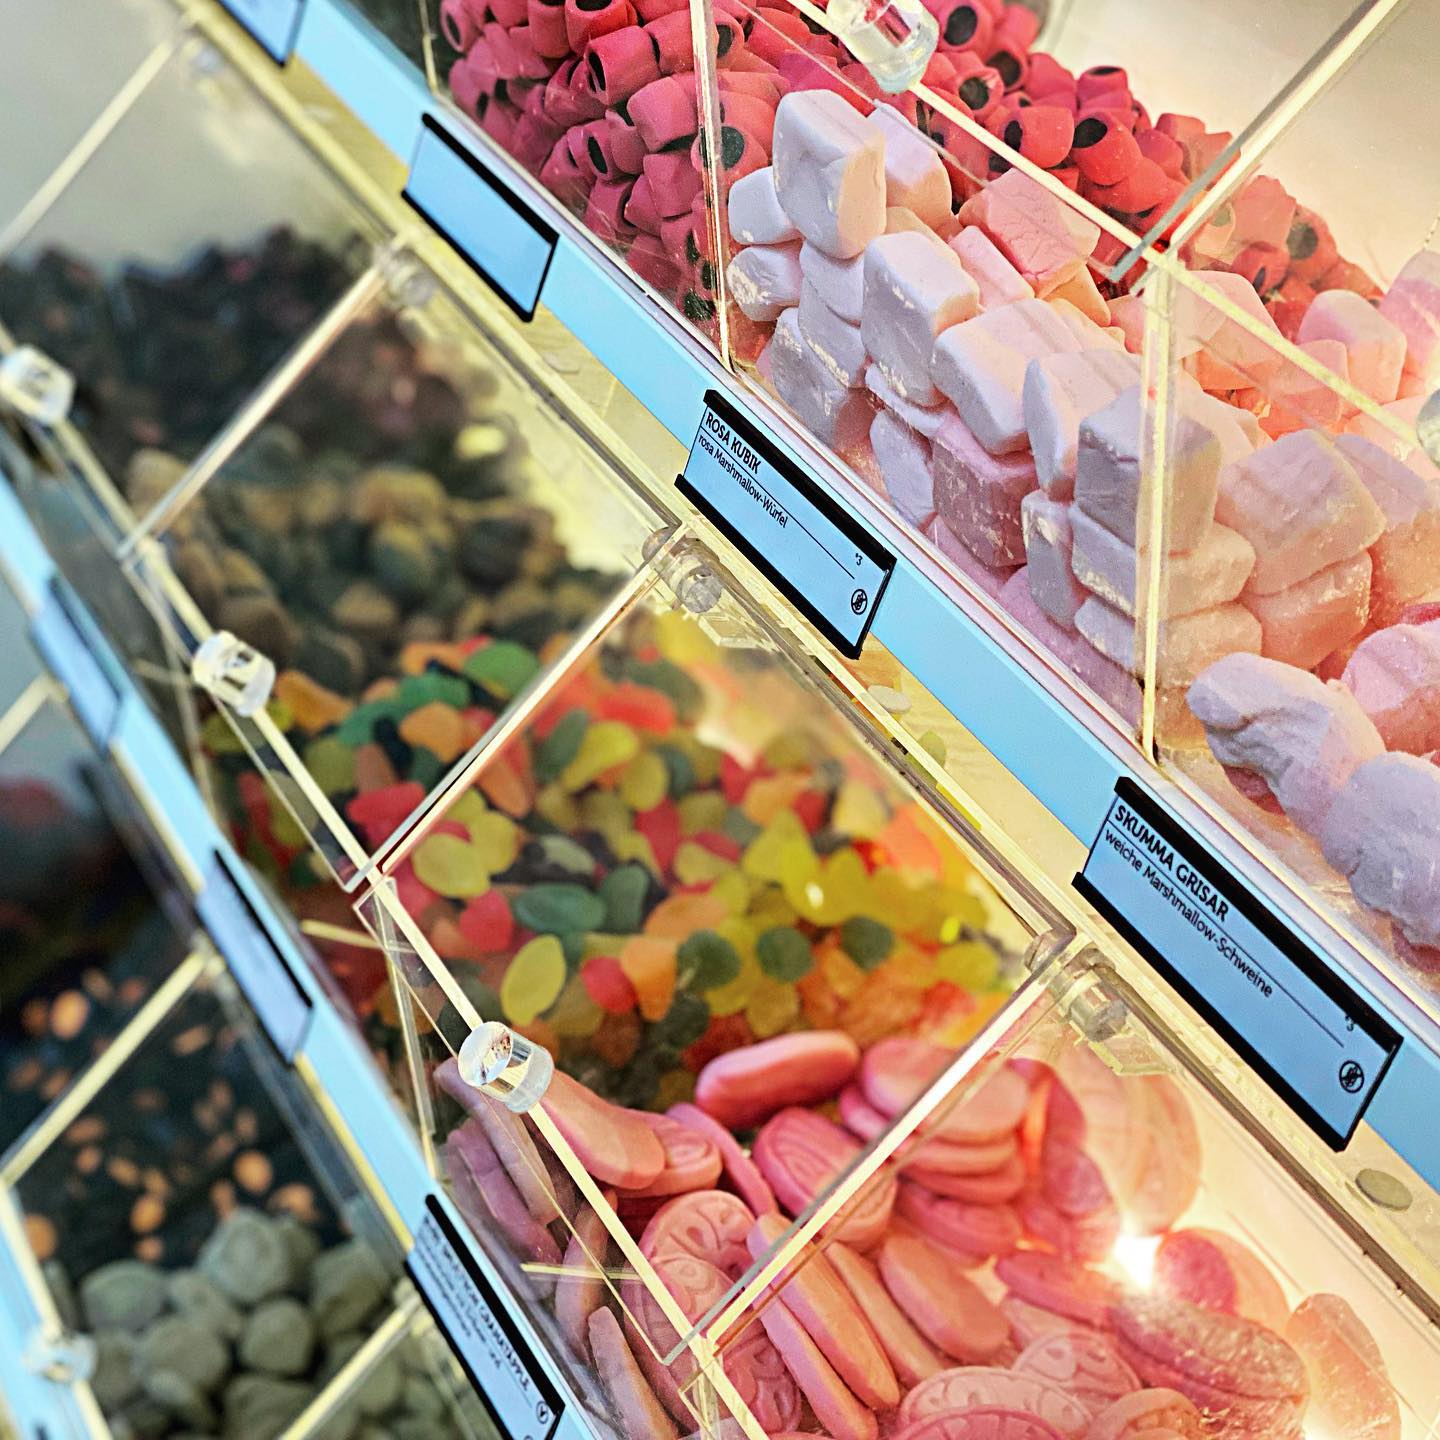 Naschhaus - Dein neuer Lieblingsladen für außergewöhnliche Süßigkeiten aus Skandinavien in Berlin-Friedrichshain 19